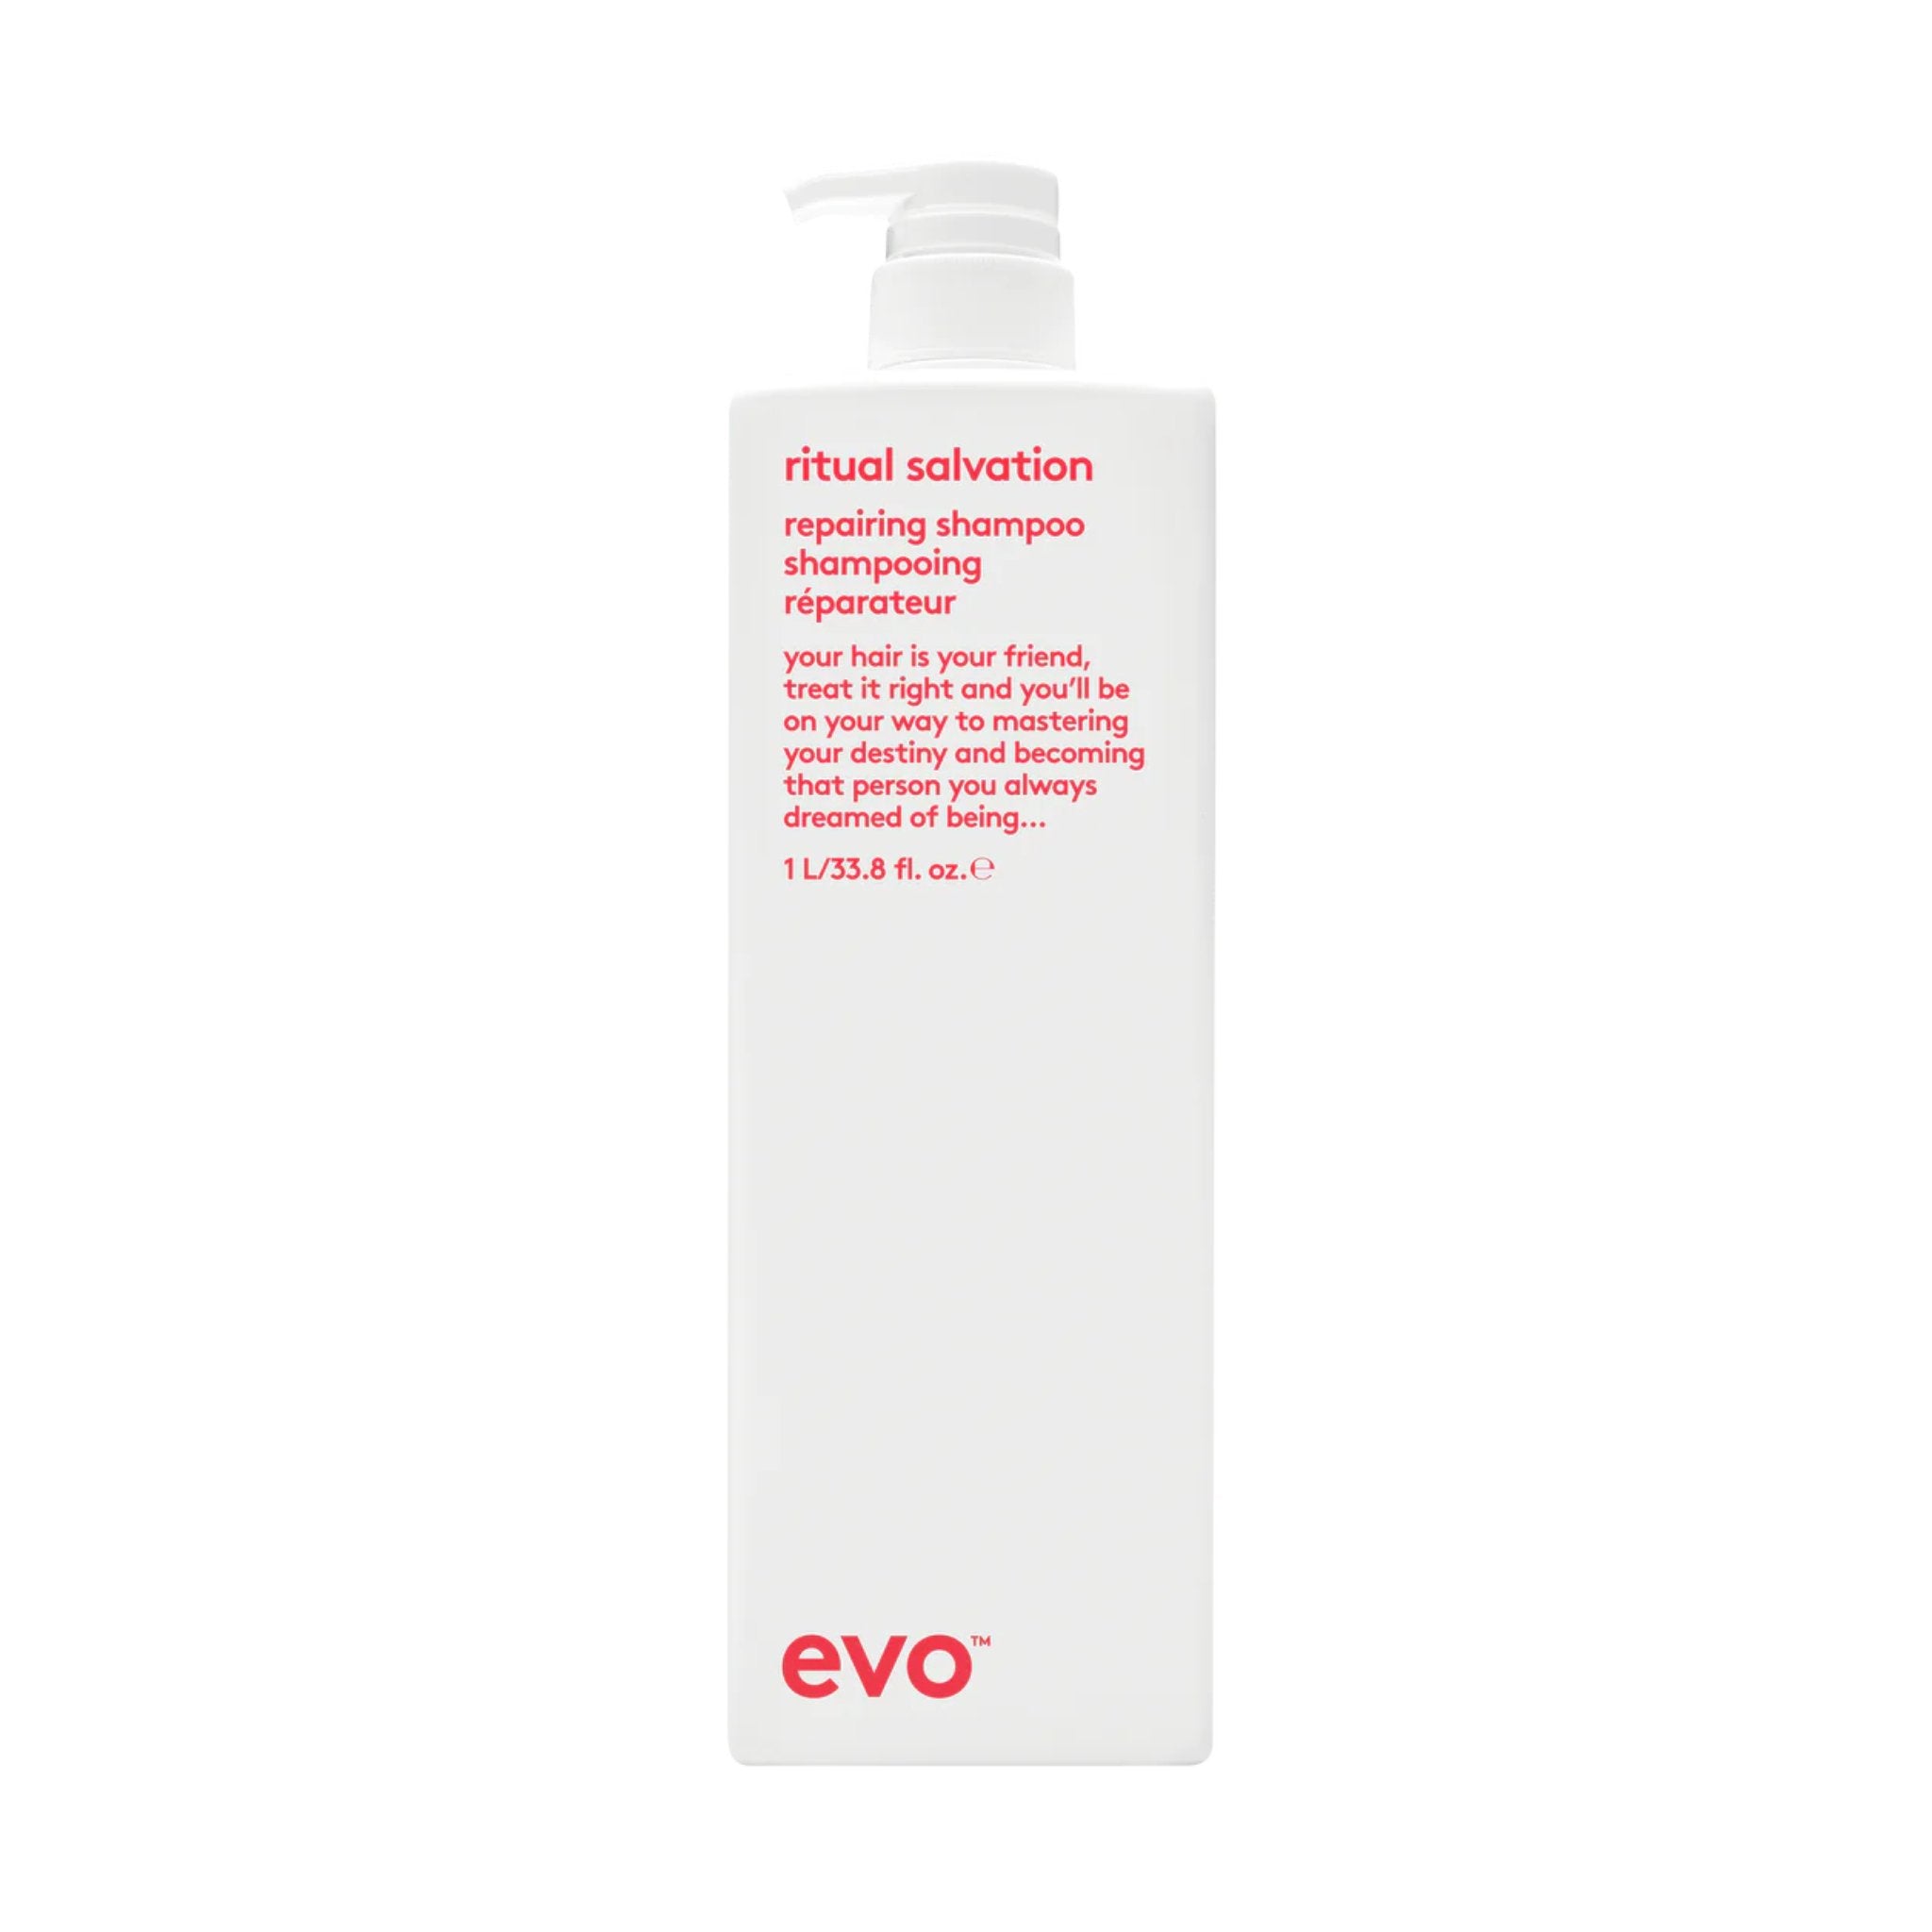 Evo. Ritual Salvation Shampoing Réparateur - 1000 ml - Concept C. Shop